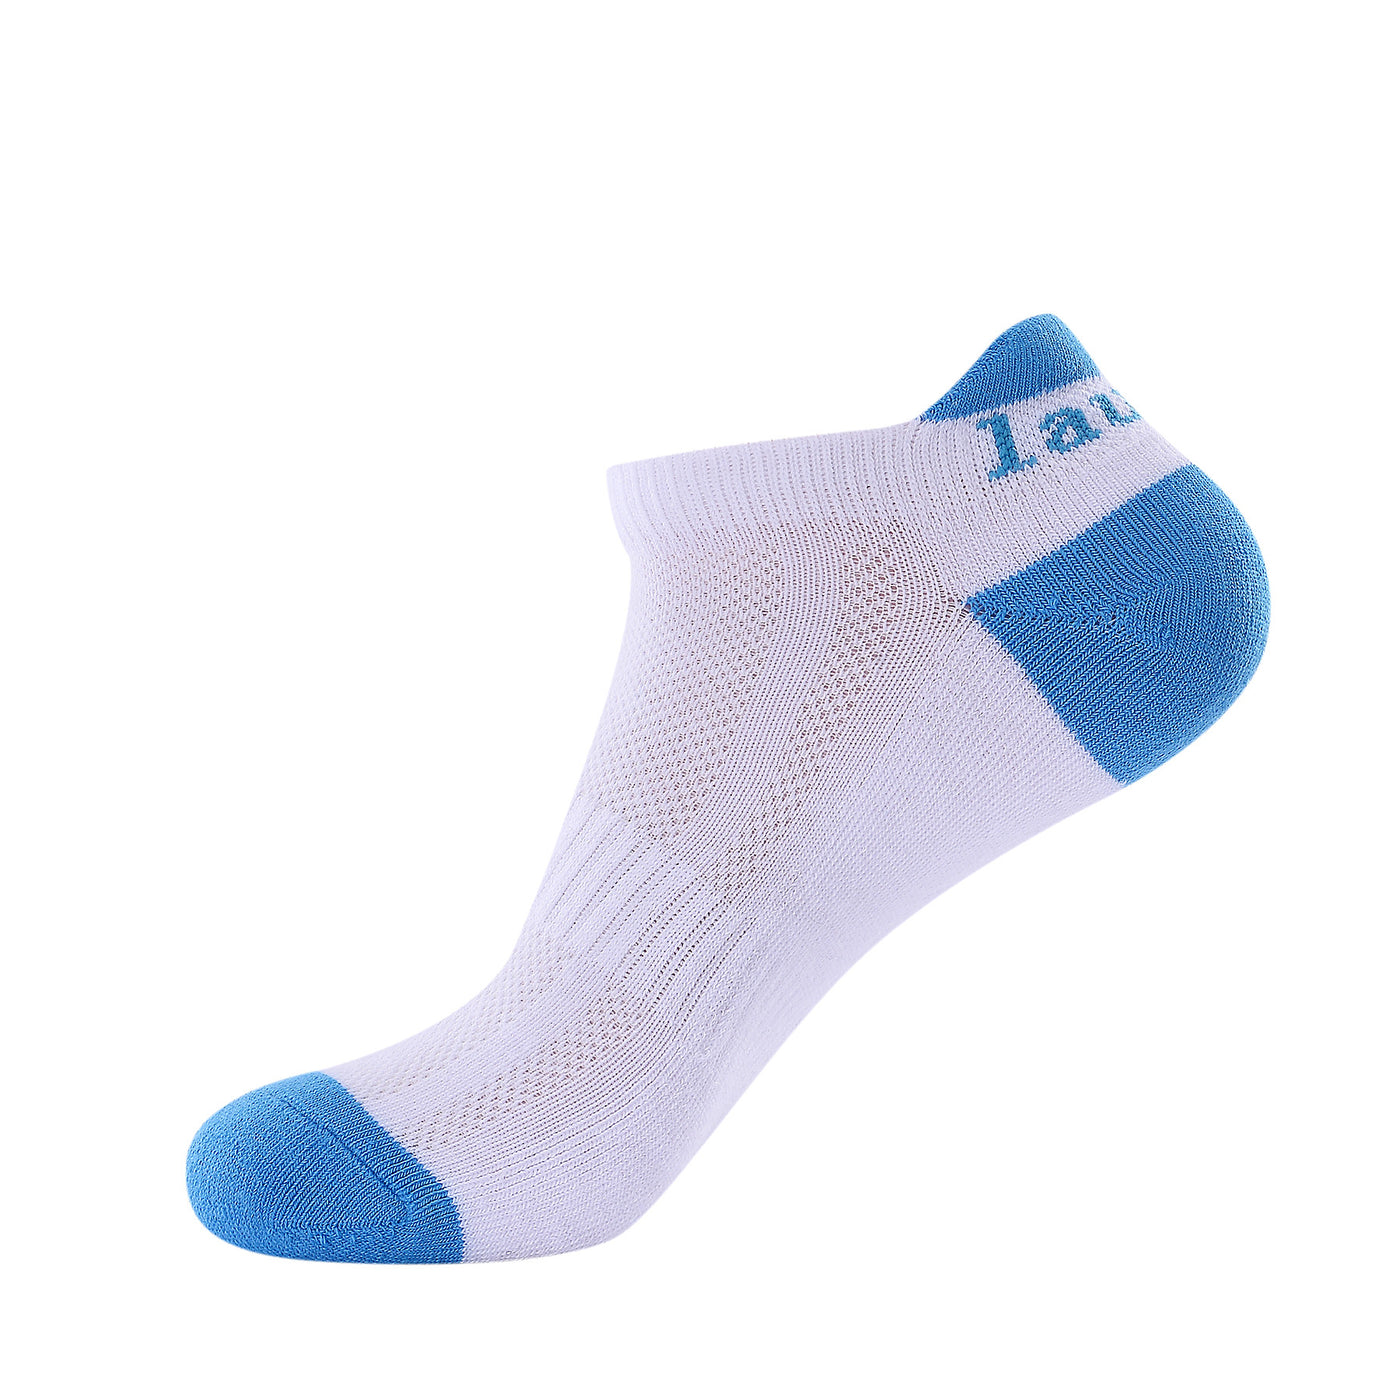 Laulax 4 pares de calcetines profesionales para correr Coolmax para mujer, protección del tendón de Aquiles, talla UK 3 - 8 / Europa 36 - 42, set de regalo